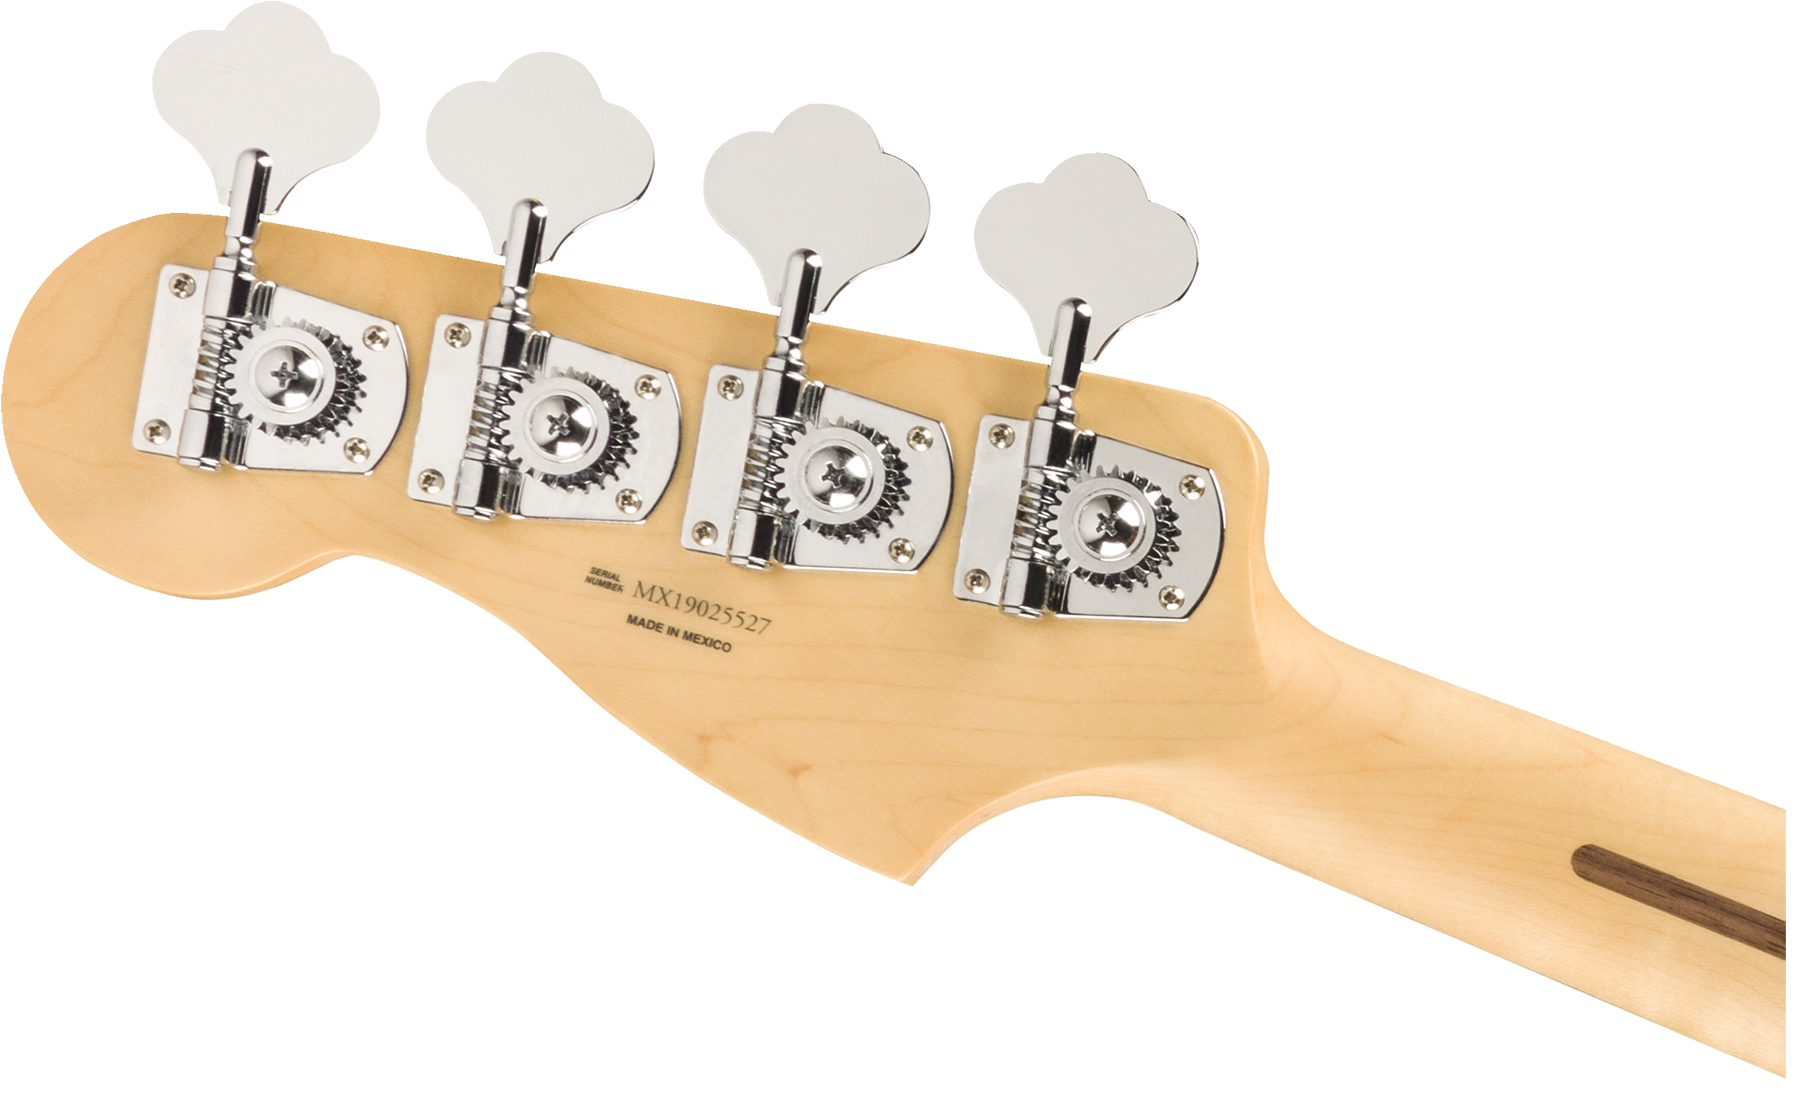 Fender Precision Bass Player Mex Pf - Capri Orange - Solidbody E-bass - Variation 3